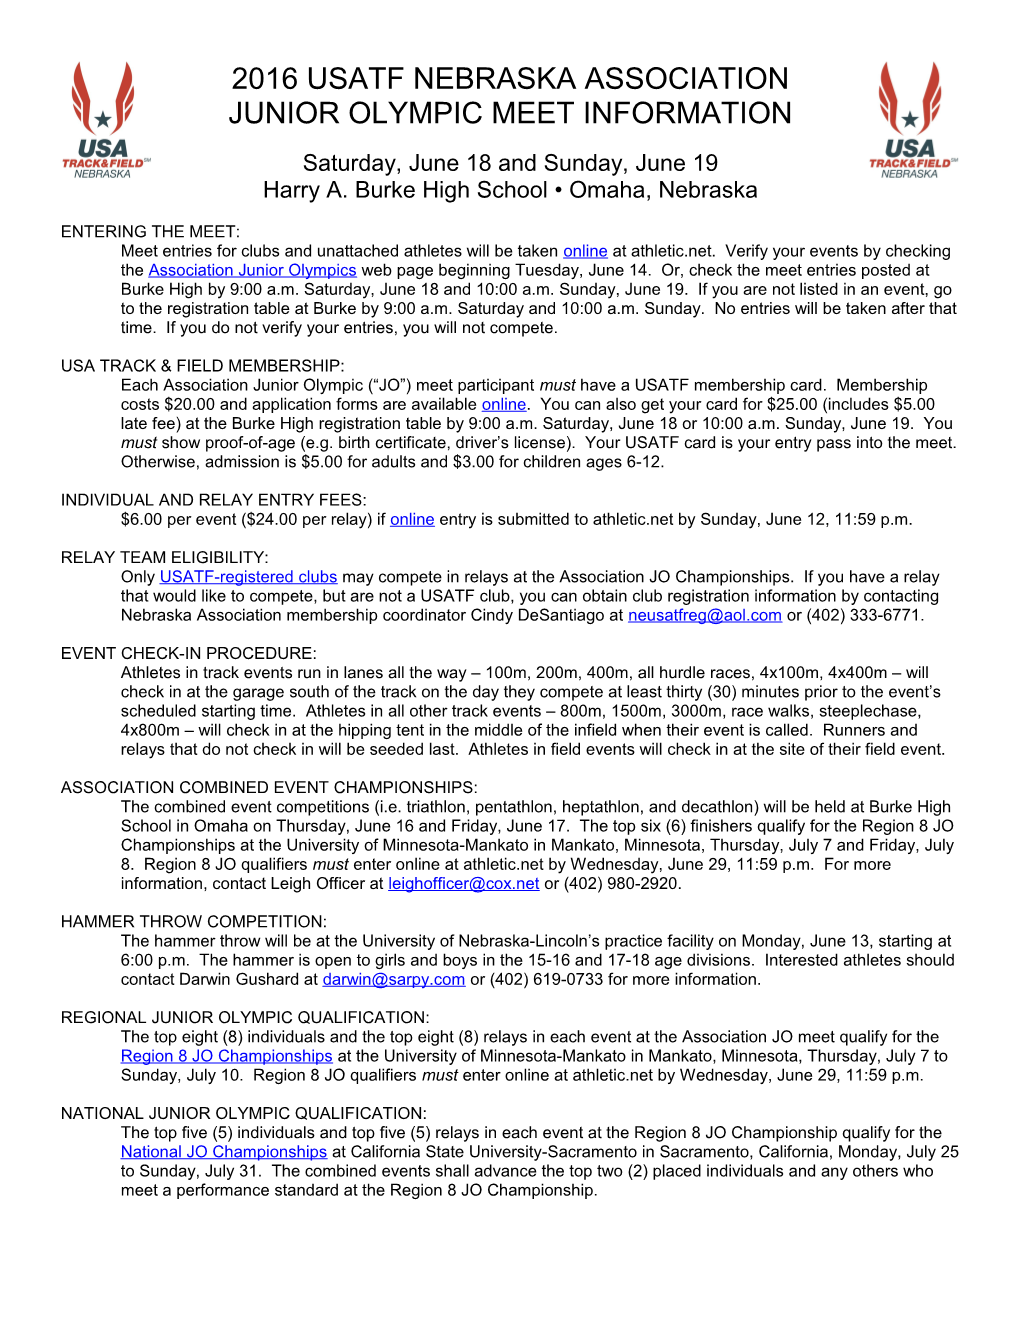 2015 USATF Nebraska Association Junior Olympics Meet Information